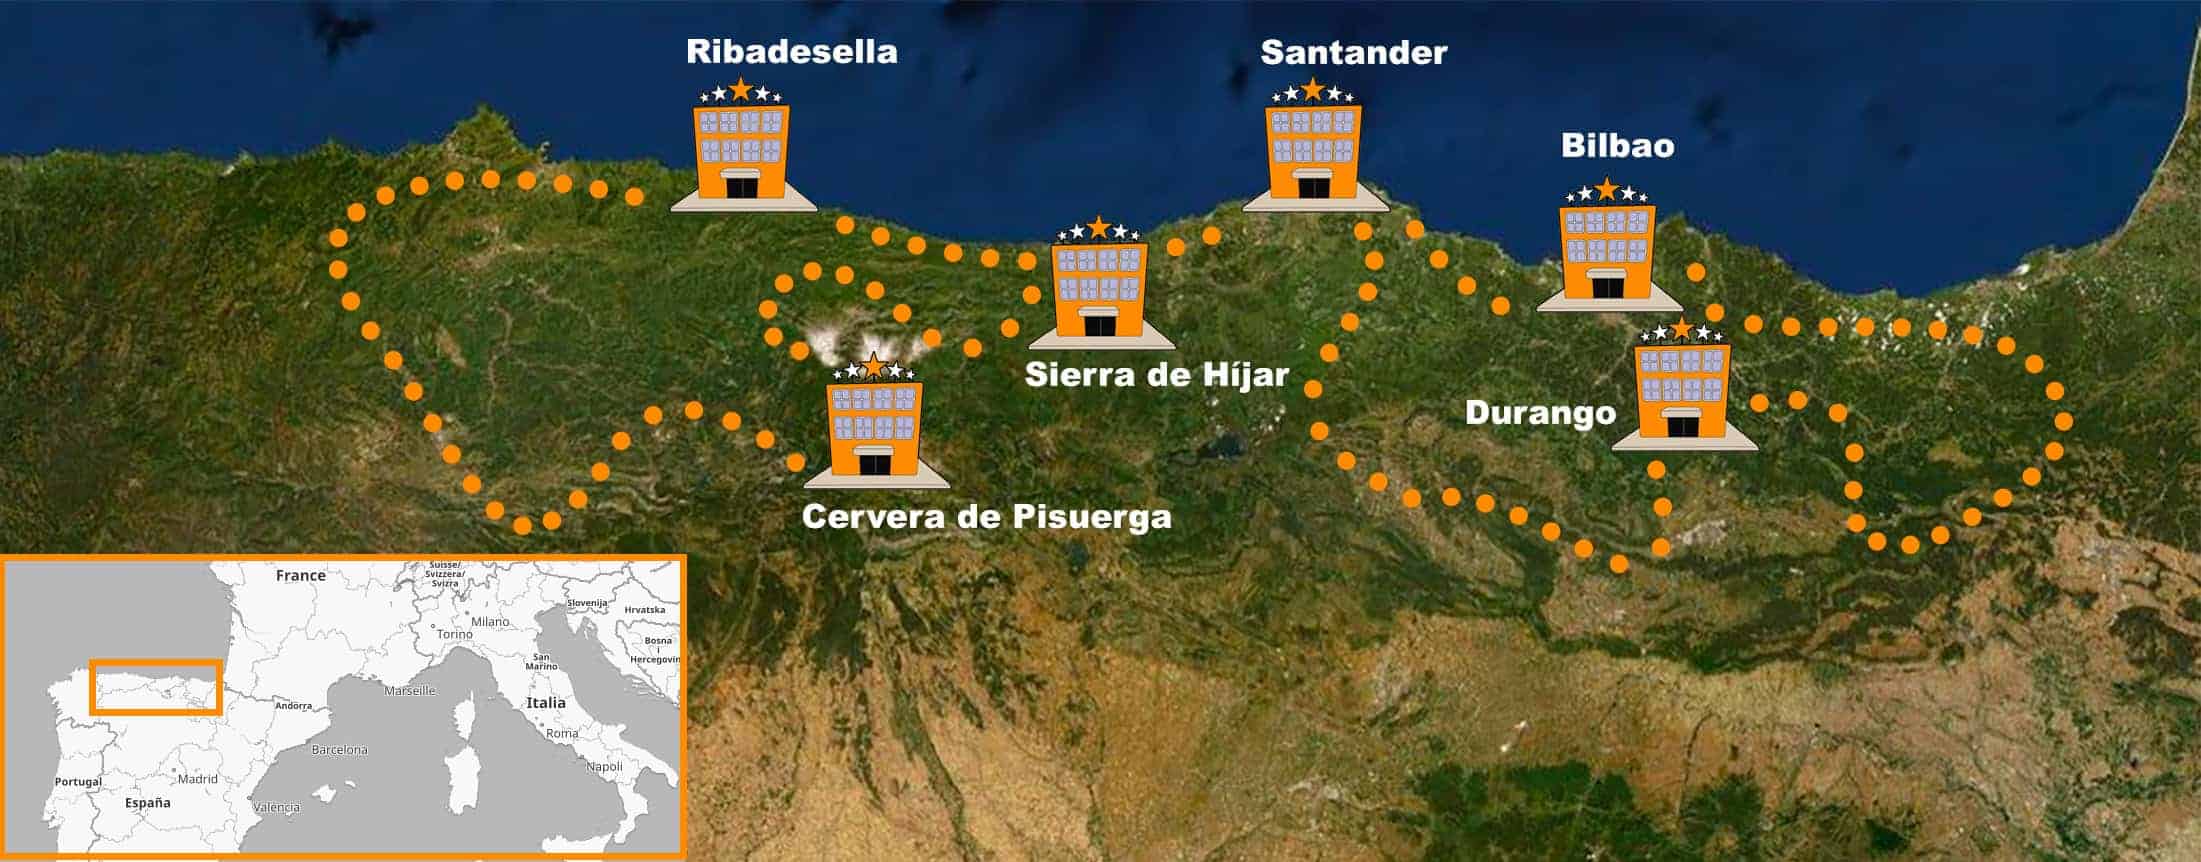 itinerario Viaje en moto organizado por el Norte de España 